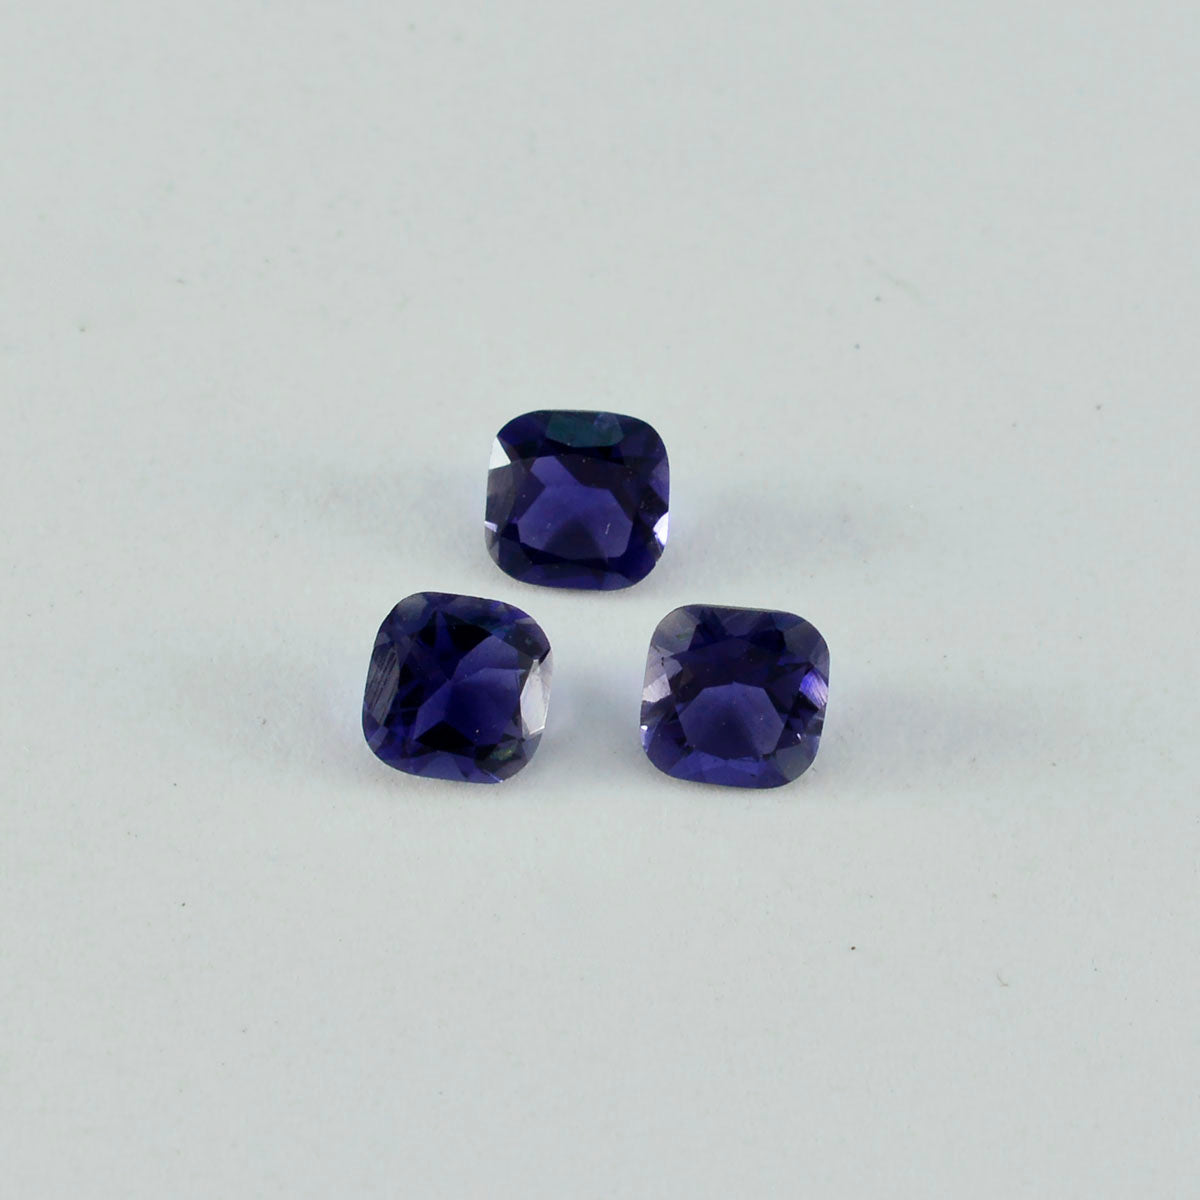 Riyogems 1 Stück blauer Iolith, facettiert, 7 x 7 mm, Kissenform, hübscher Qualitäts-Edelstein